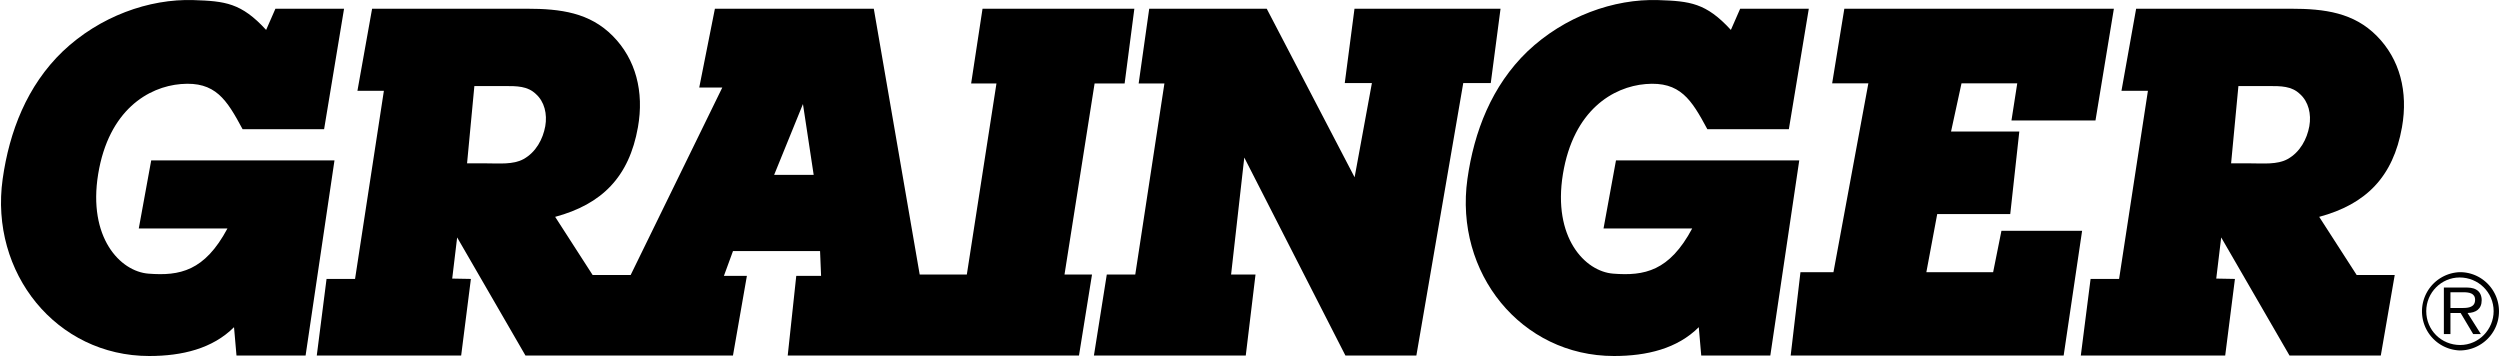 W.W. Grainger logo colors